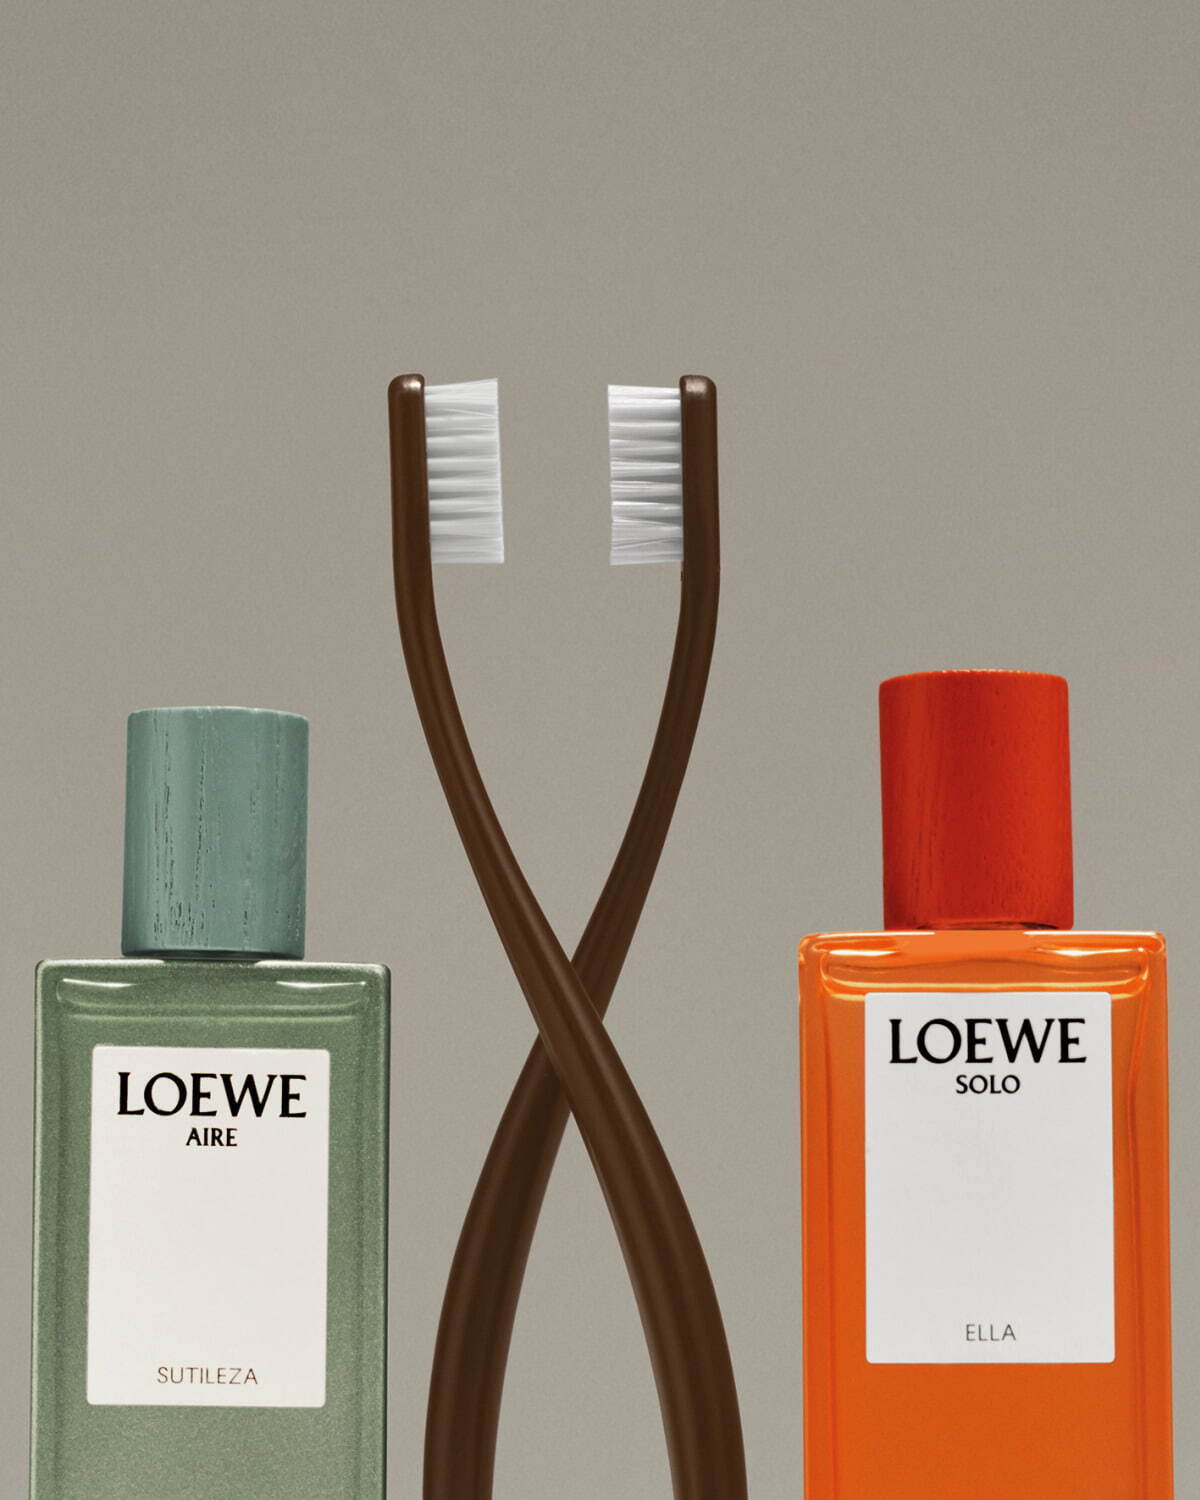 ロエベ フレグランスの限定香水セット、“組み合わせて楽しむ”2つの